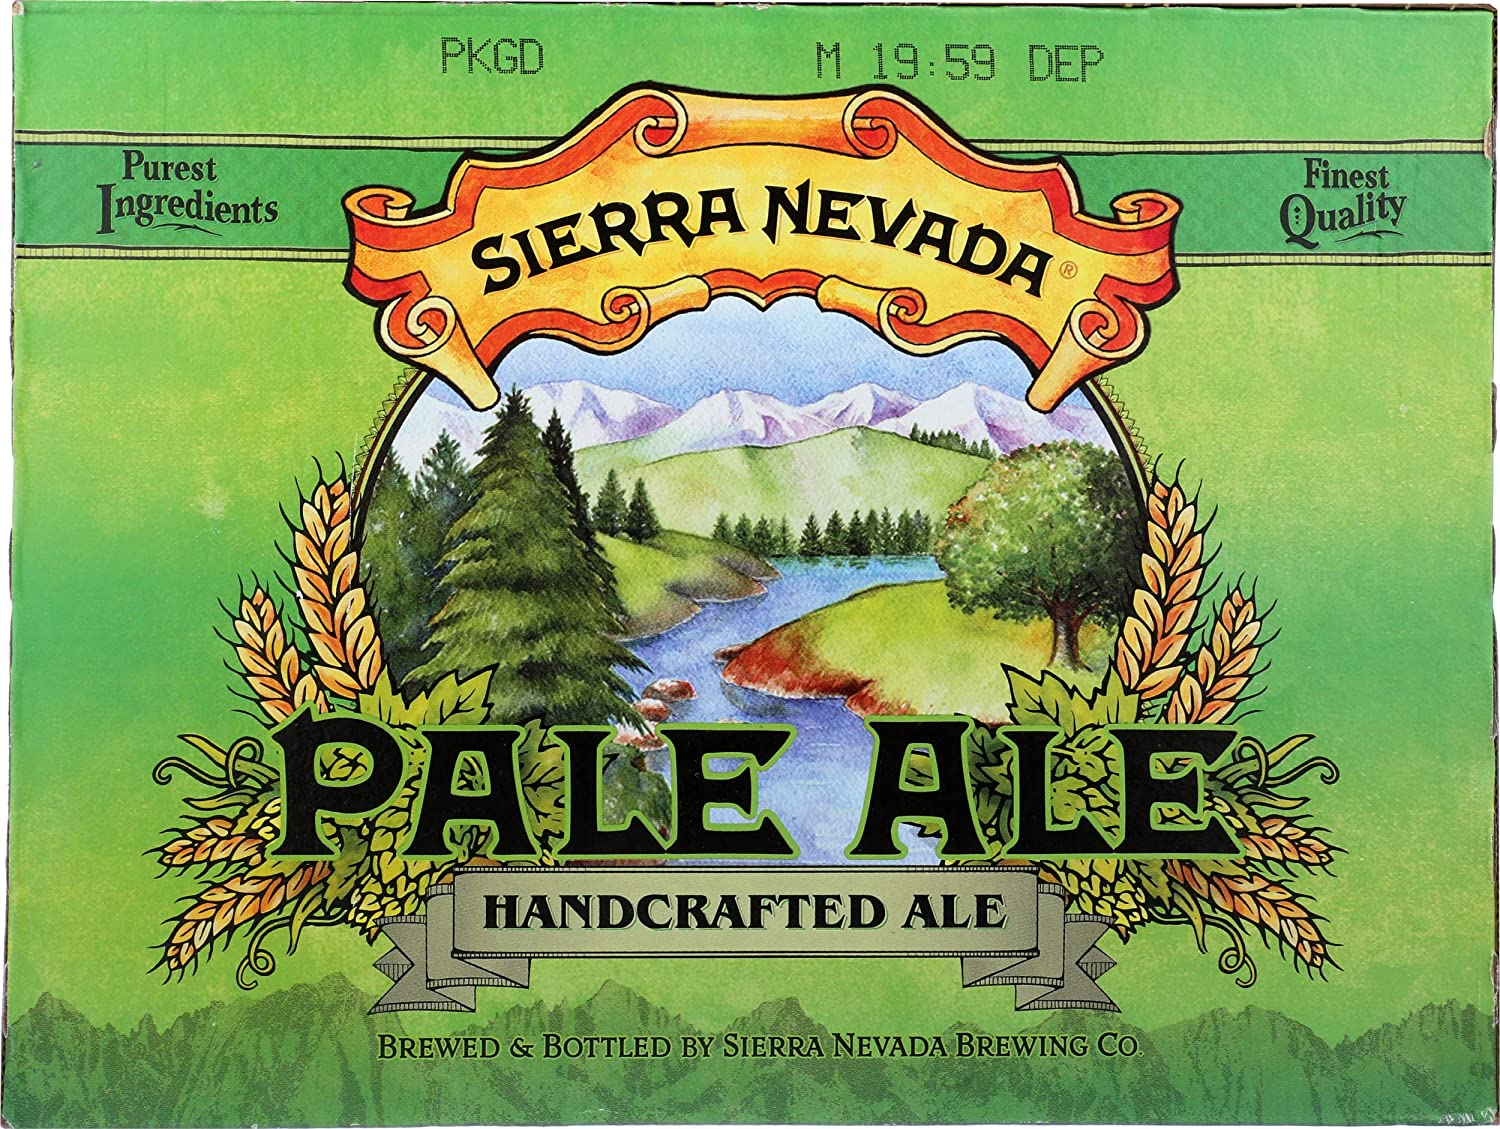 Sierra Nevada Pale Ale 0,35l - amerikanisches Craft Beer mit 5,6% Alc.